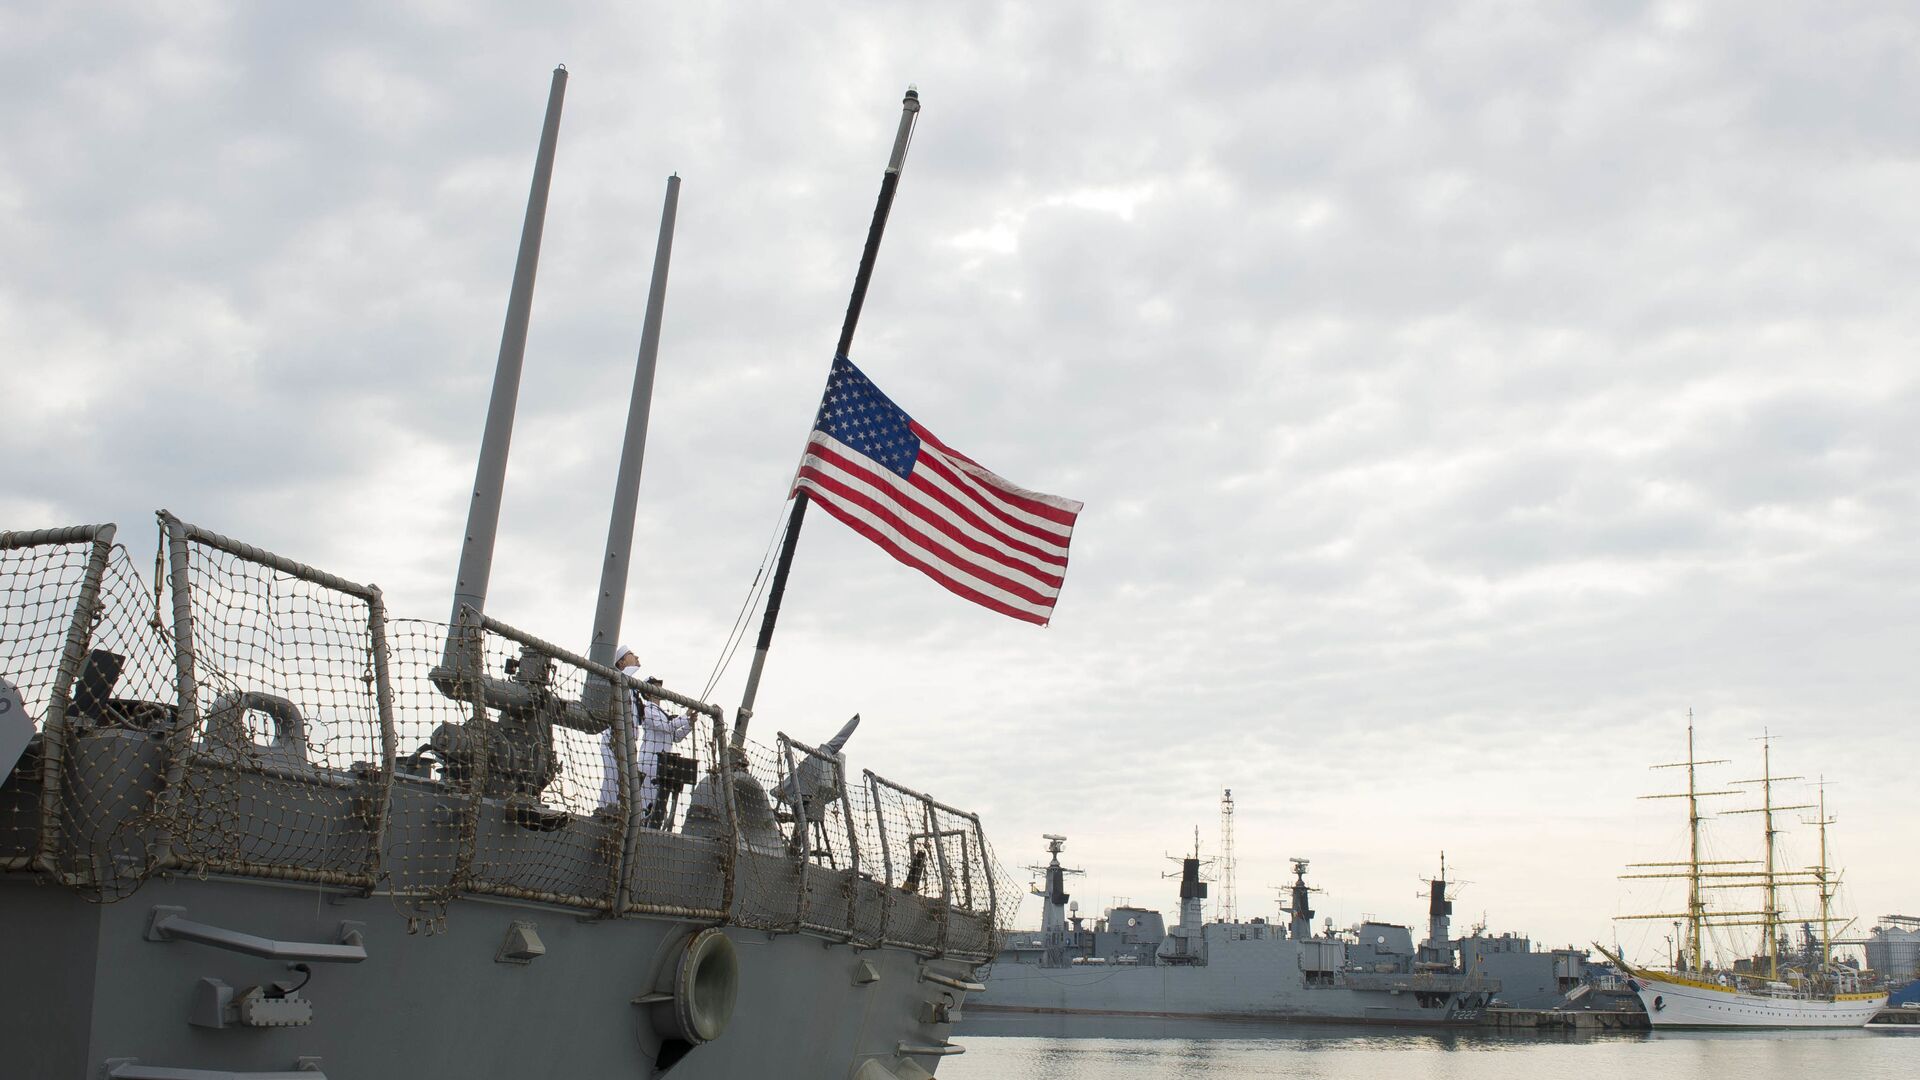 Моряки поднимают флаг на эсминце ВМС США Портер - Sputnik Latvija, 1920, 20.02.2021